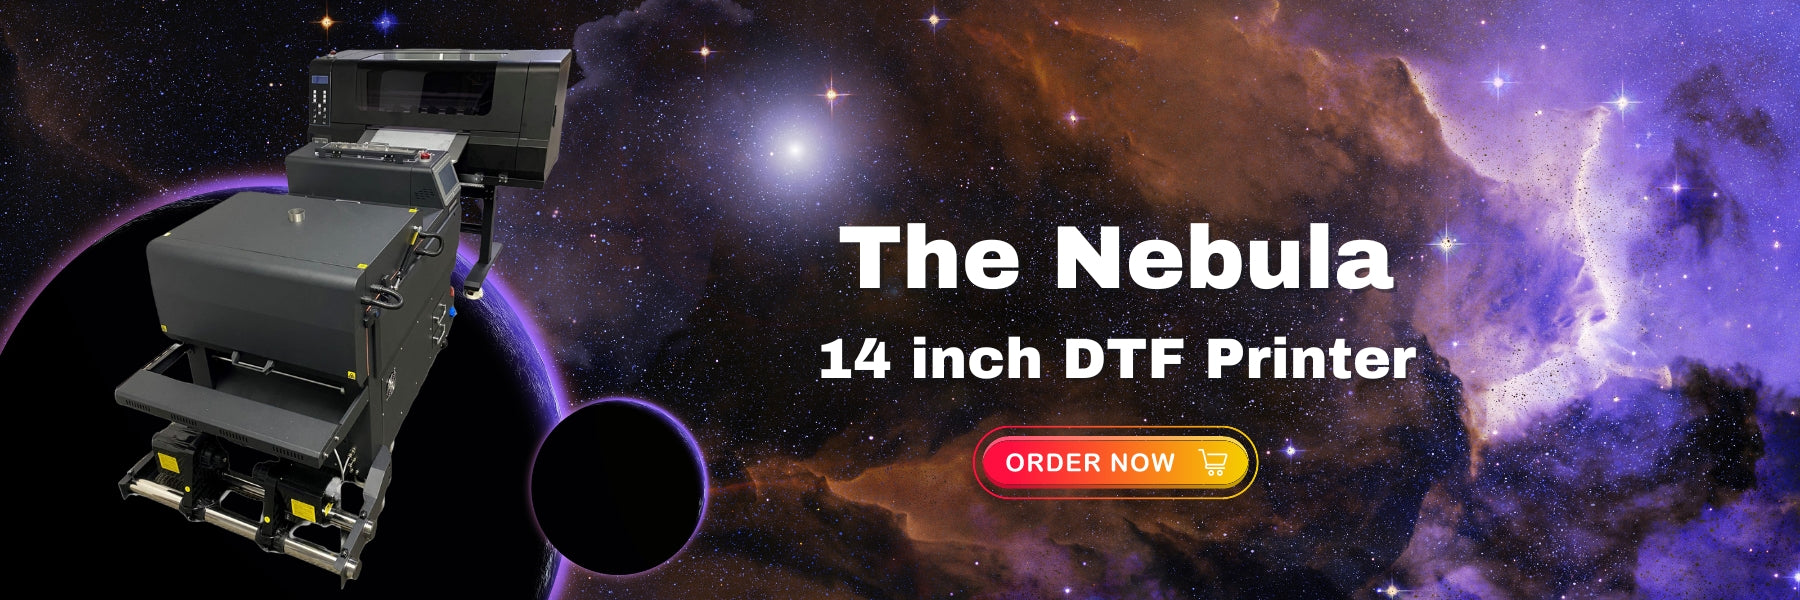 Nebula - DTF Printer 